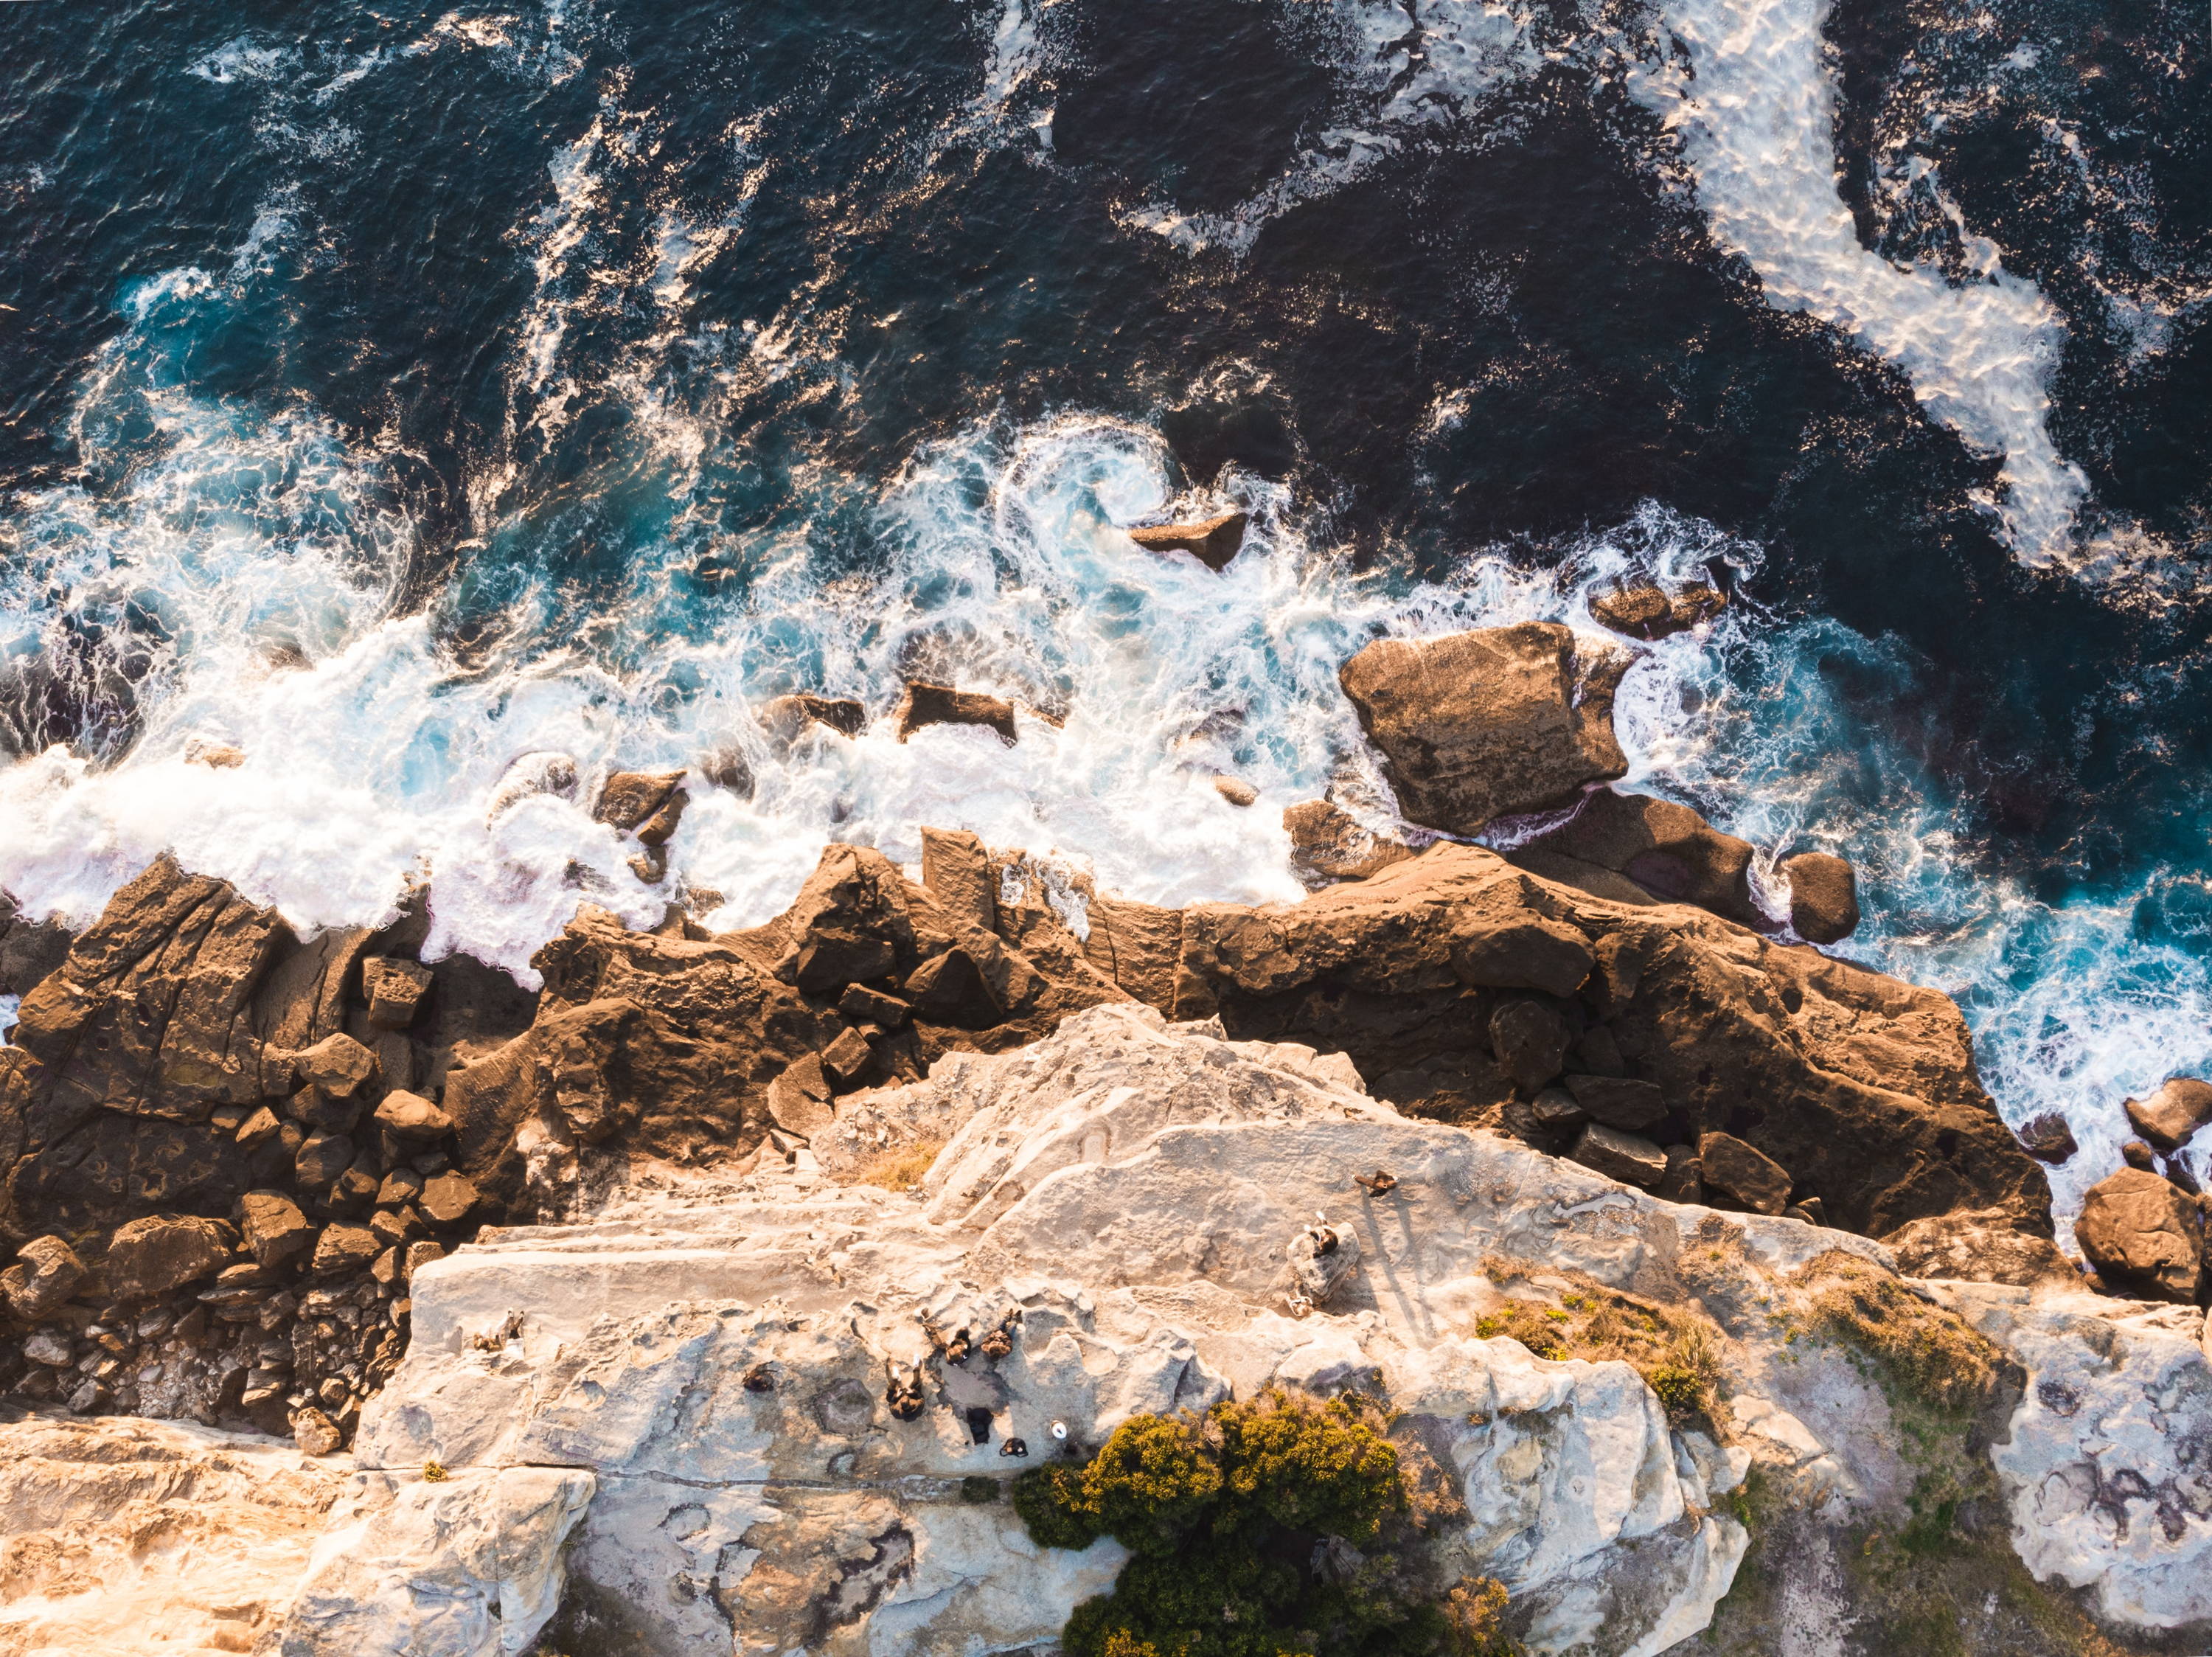 Overhead shot of rocky cliffs overlooking the ocean